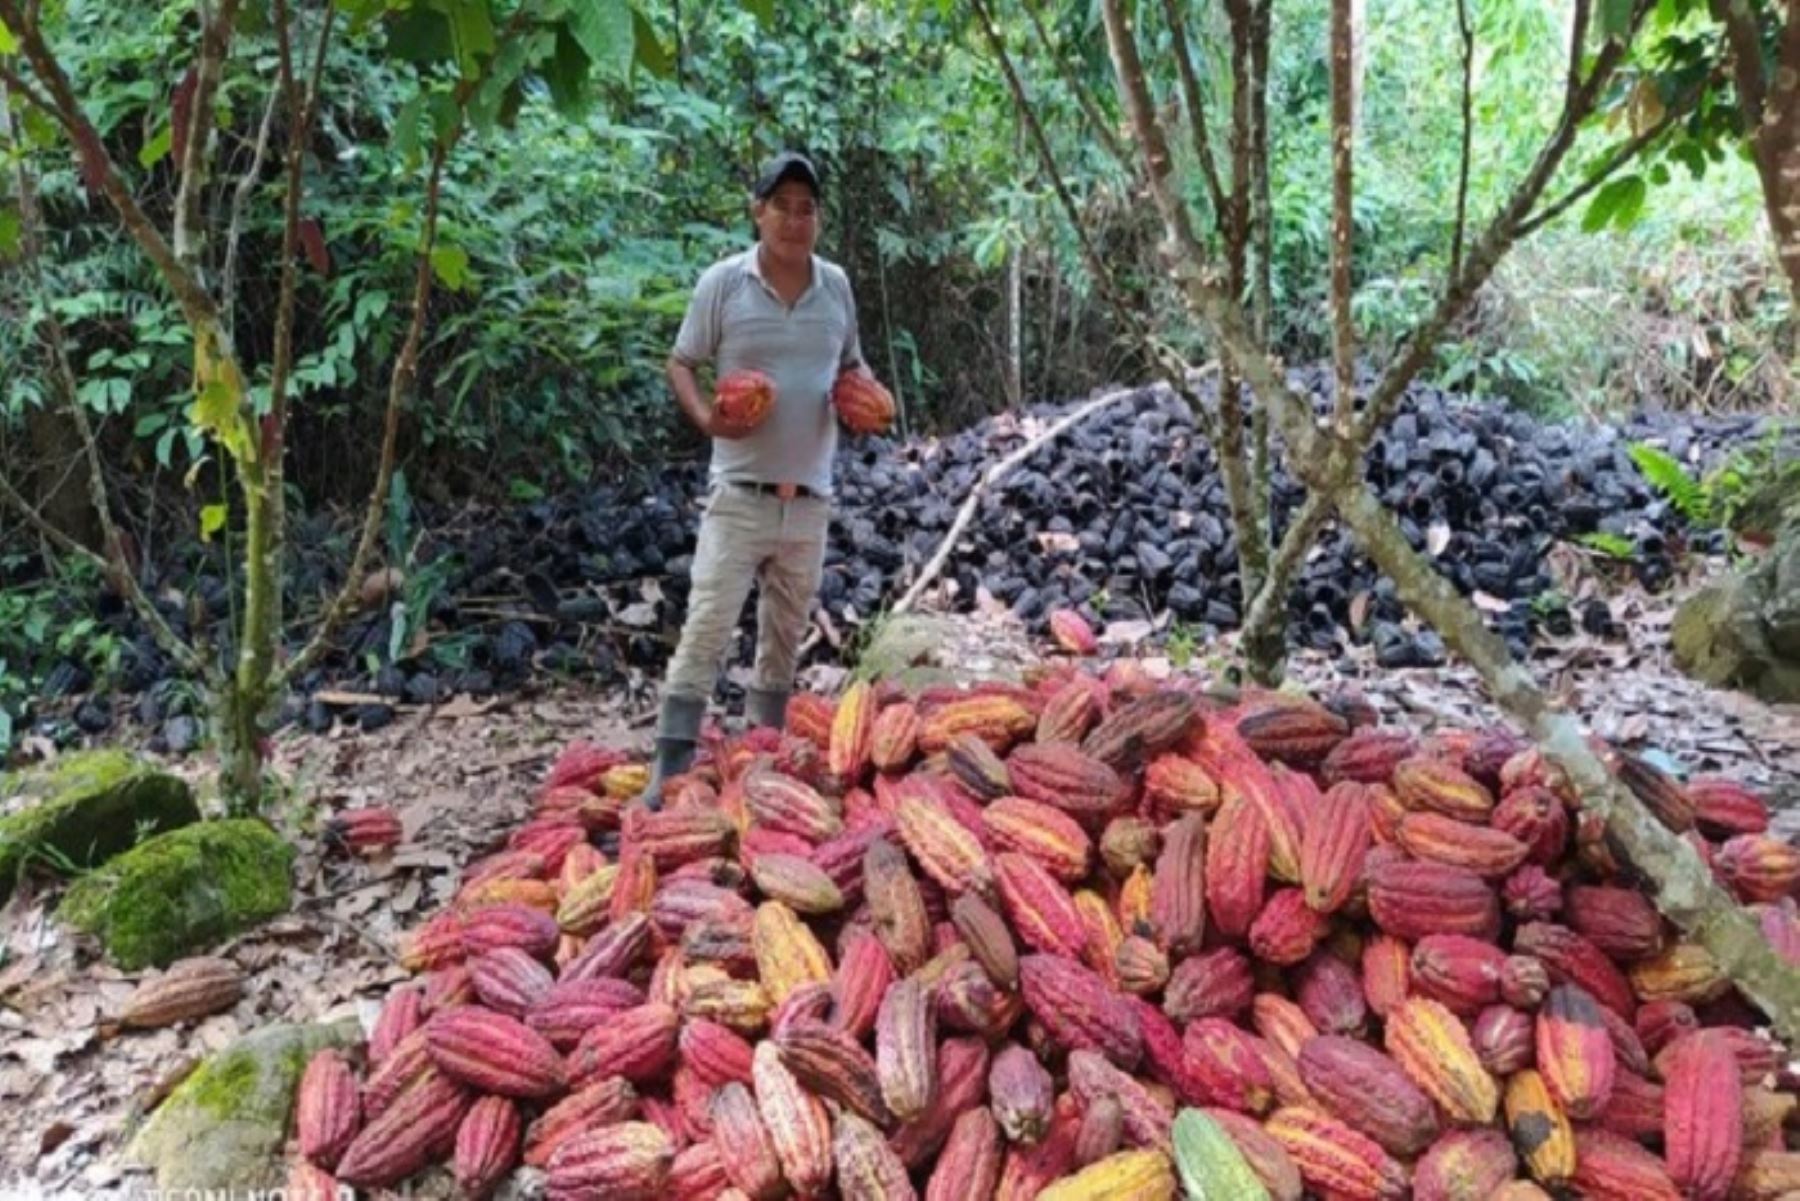 El Ministerio del Ambiente, a través de su Programa Nacional de Conservación de Bosques para la Mitigación del Cambio Climático (Programa Bosques), impulsa iniciativas de producción sostenible del cacao, libre de deforestación, en 67 comunidades nativas de 9 regiones amazónicas a fin de impulsar la conservación de dichos espacios y generar ingresos económicos para la población.